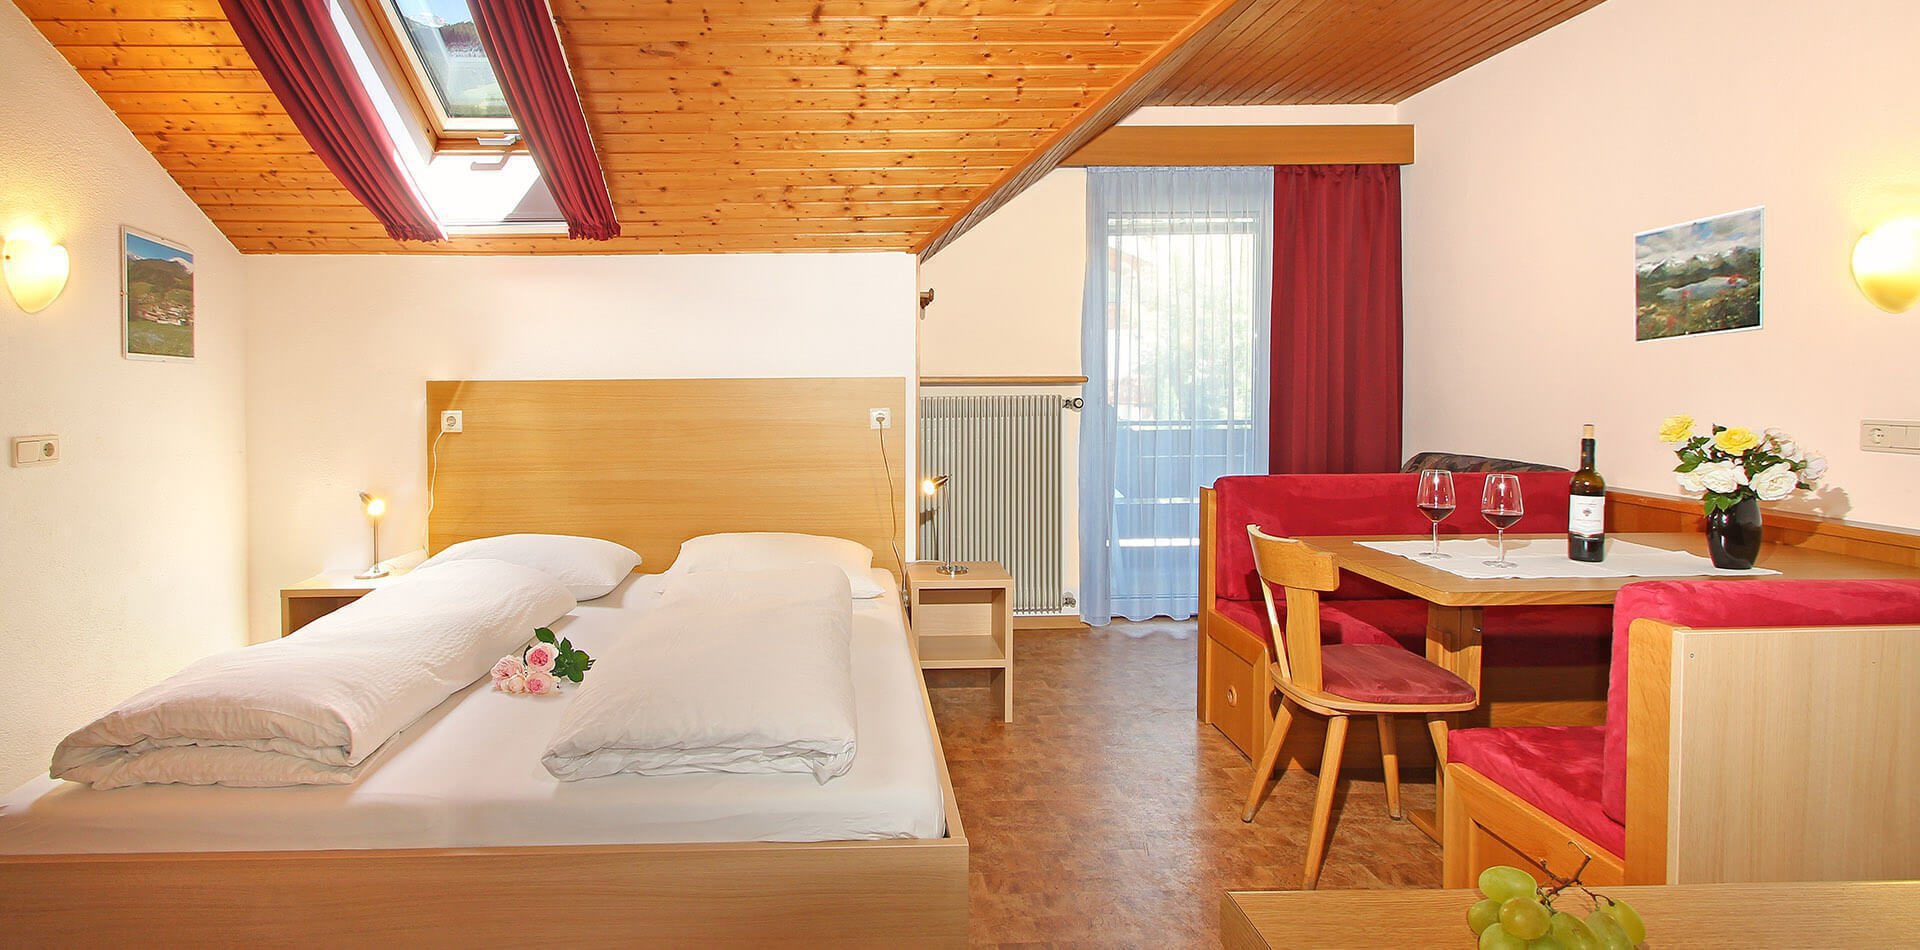 Einraumappartments im Ahrntal - Ferienwohnungen in Südtirol